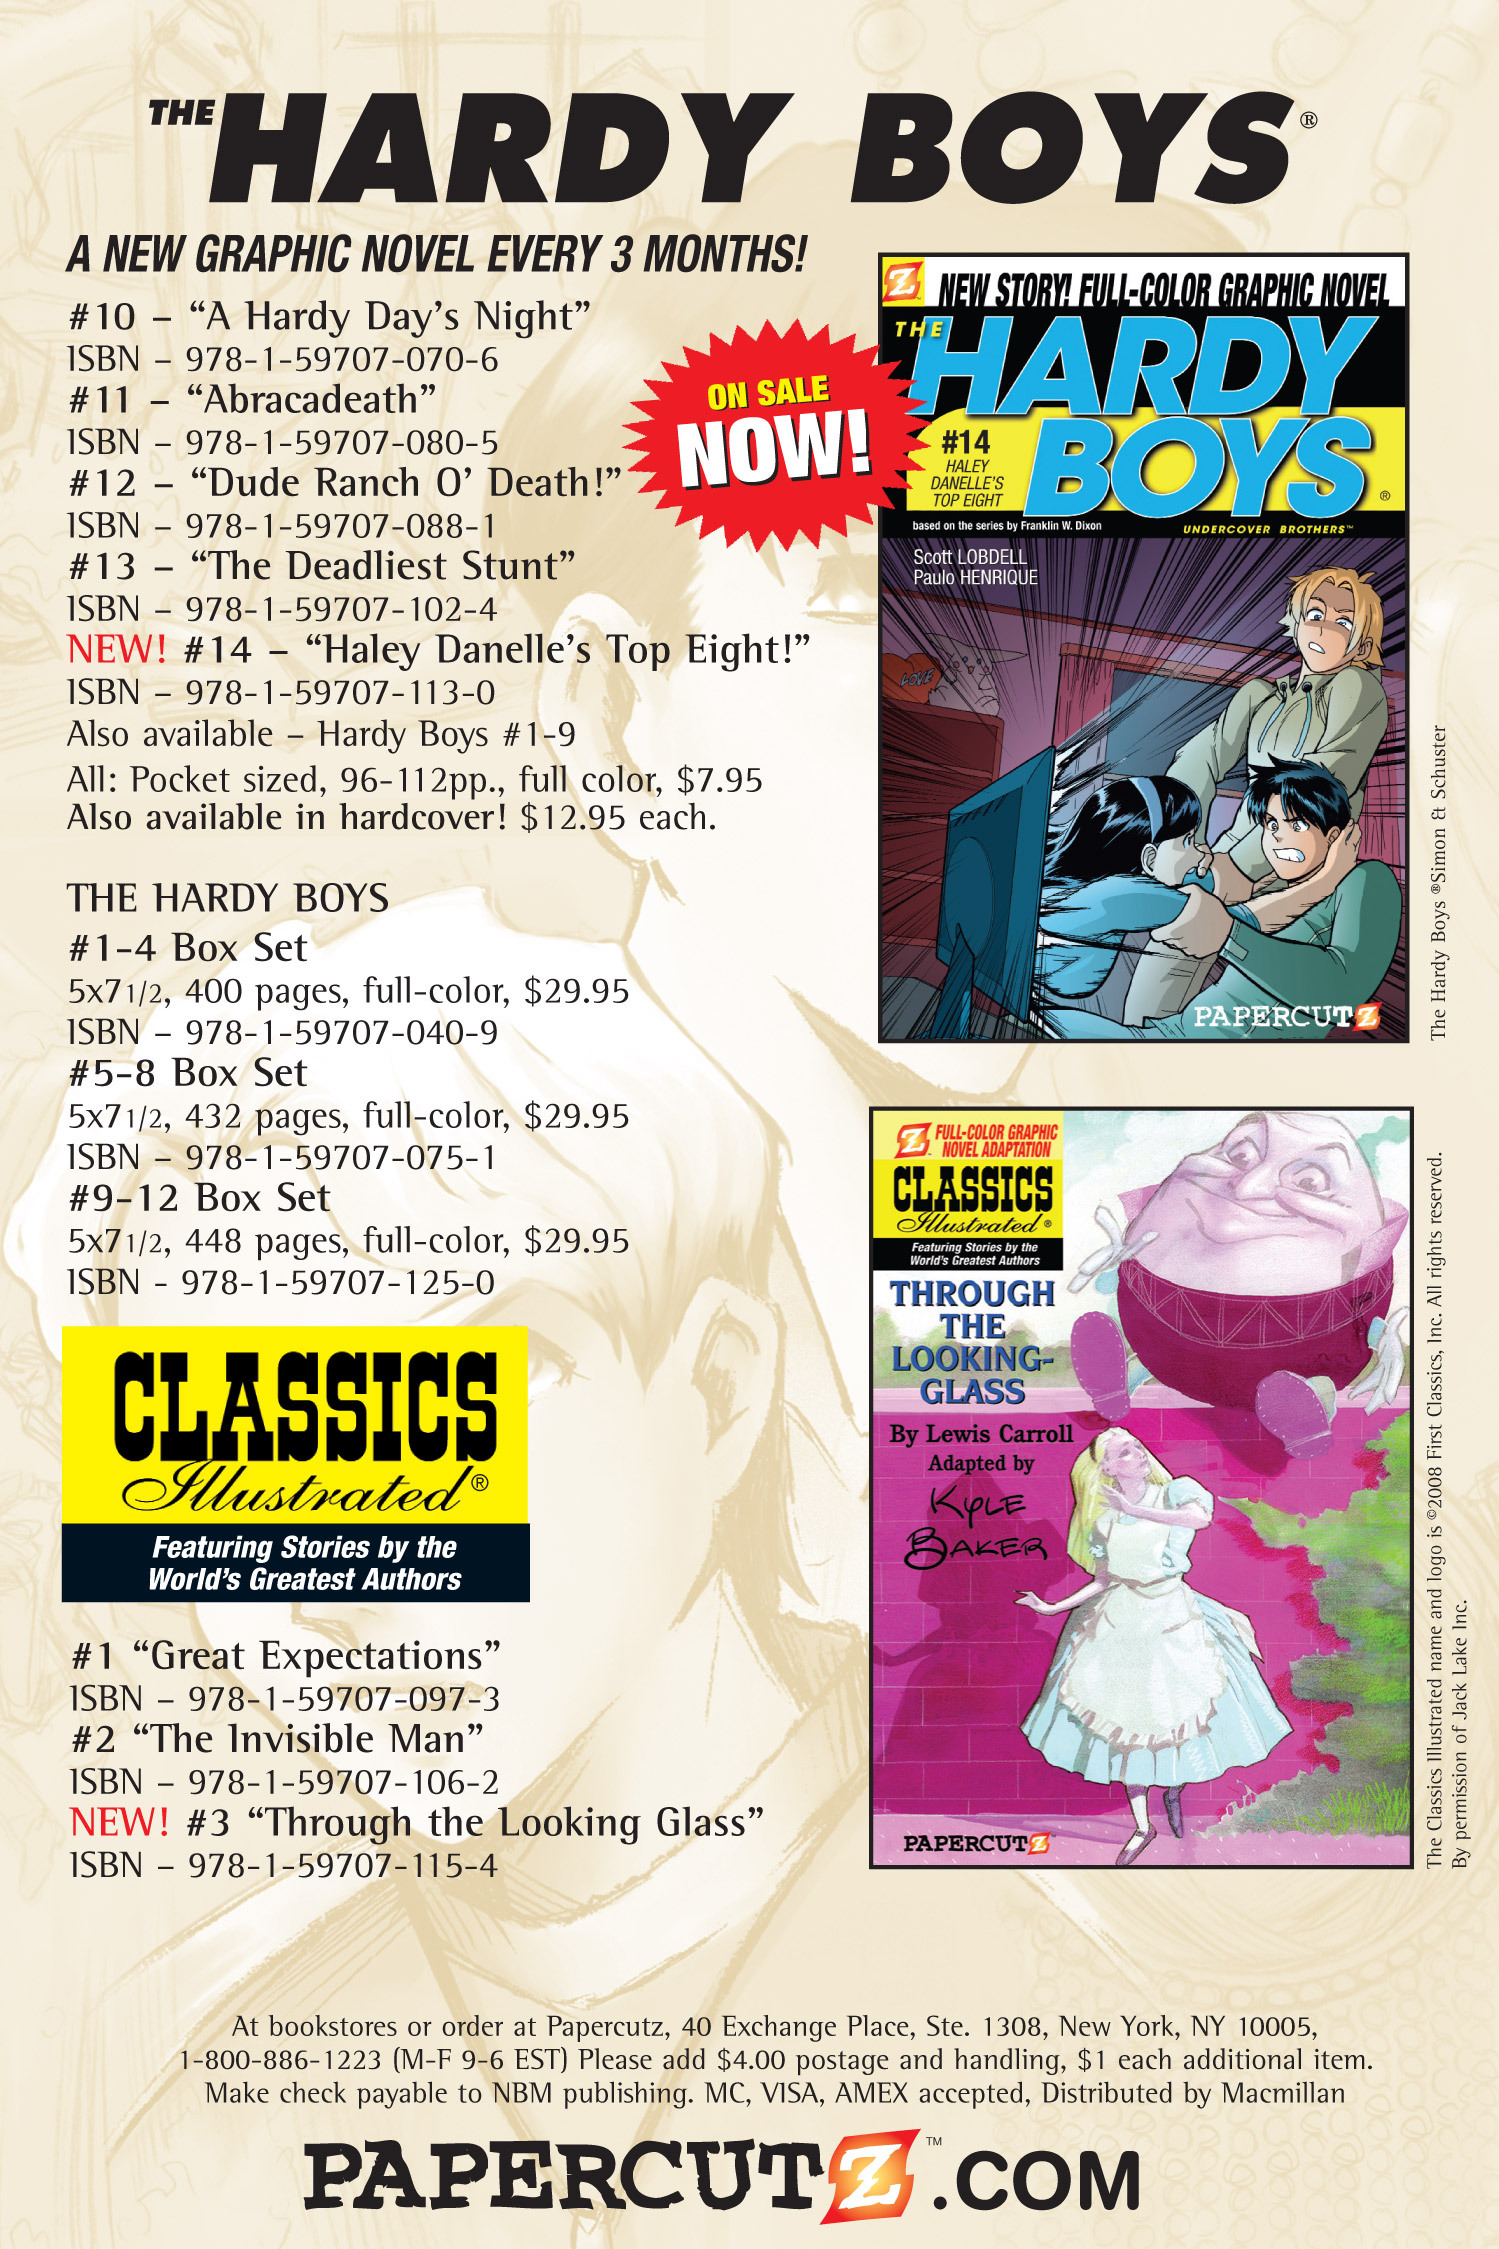 Read online Nancy Drew comic -  Issue #11 - 96